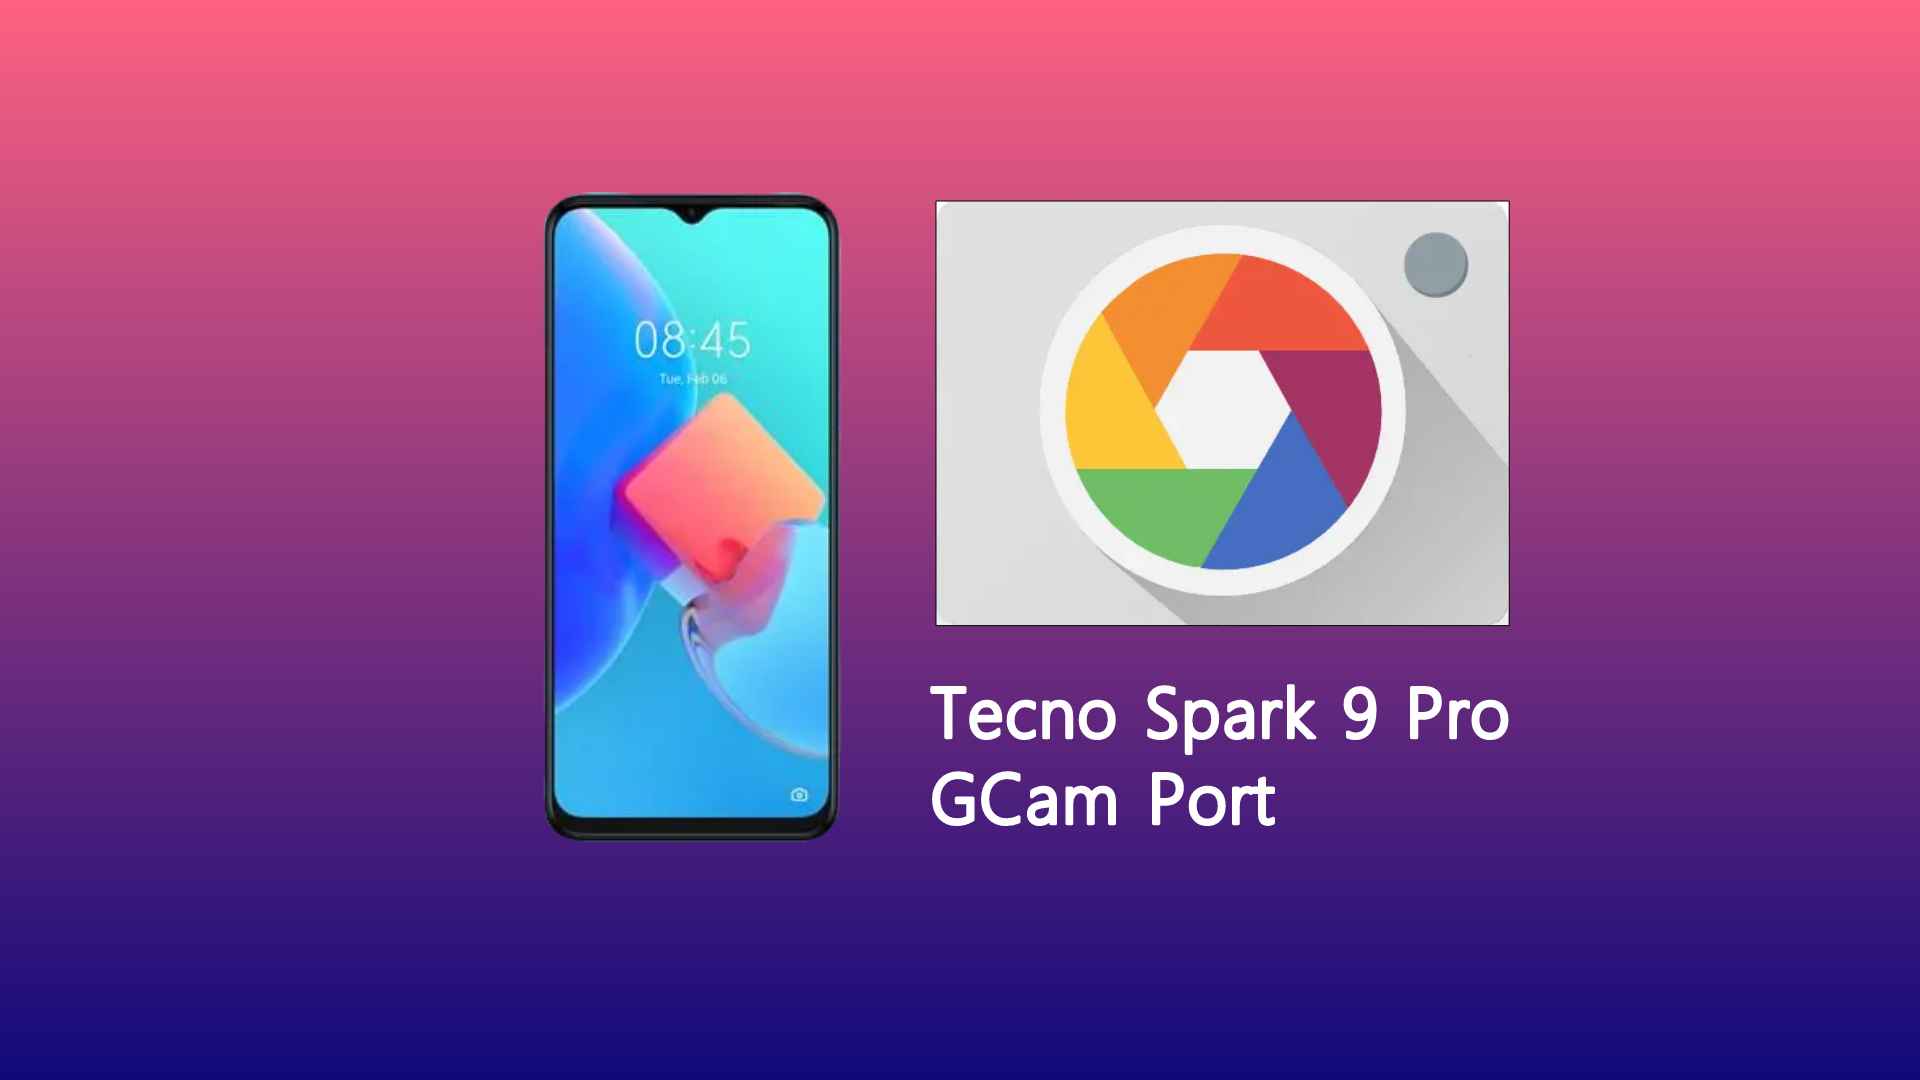 Tecno Spark 9 Pro GCam Port